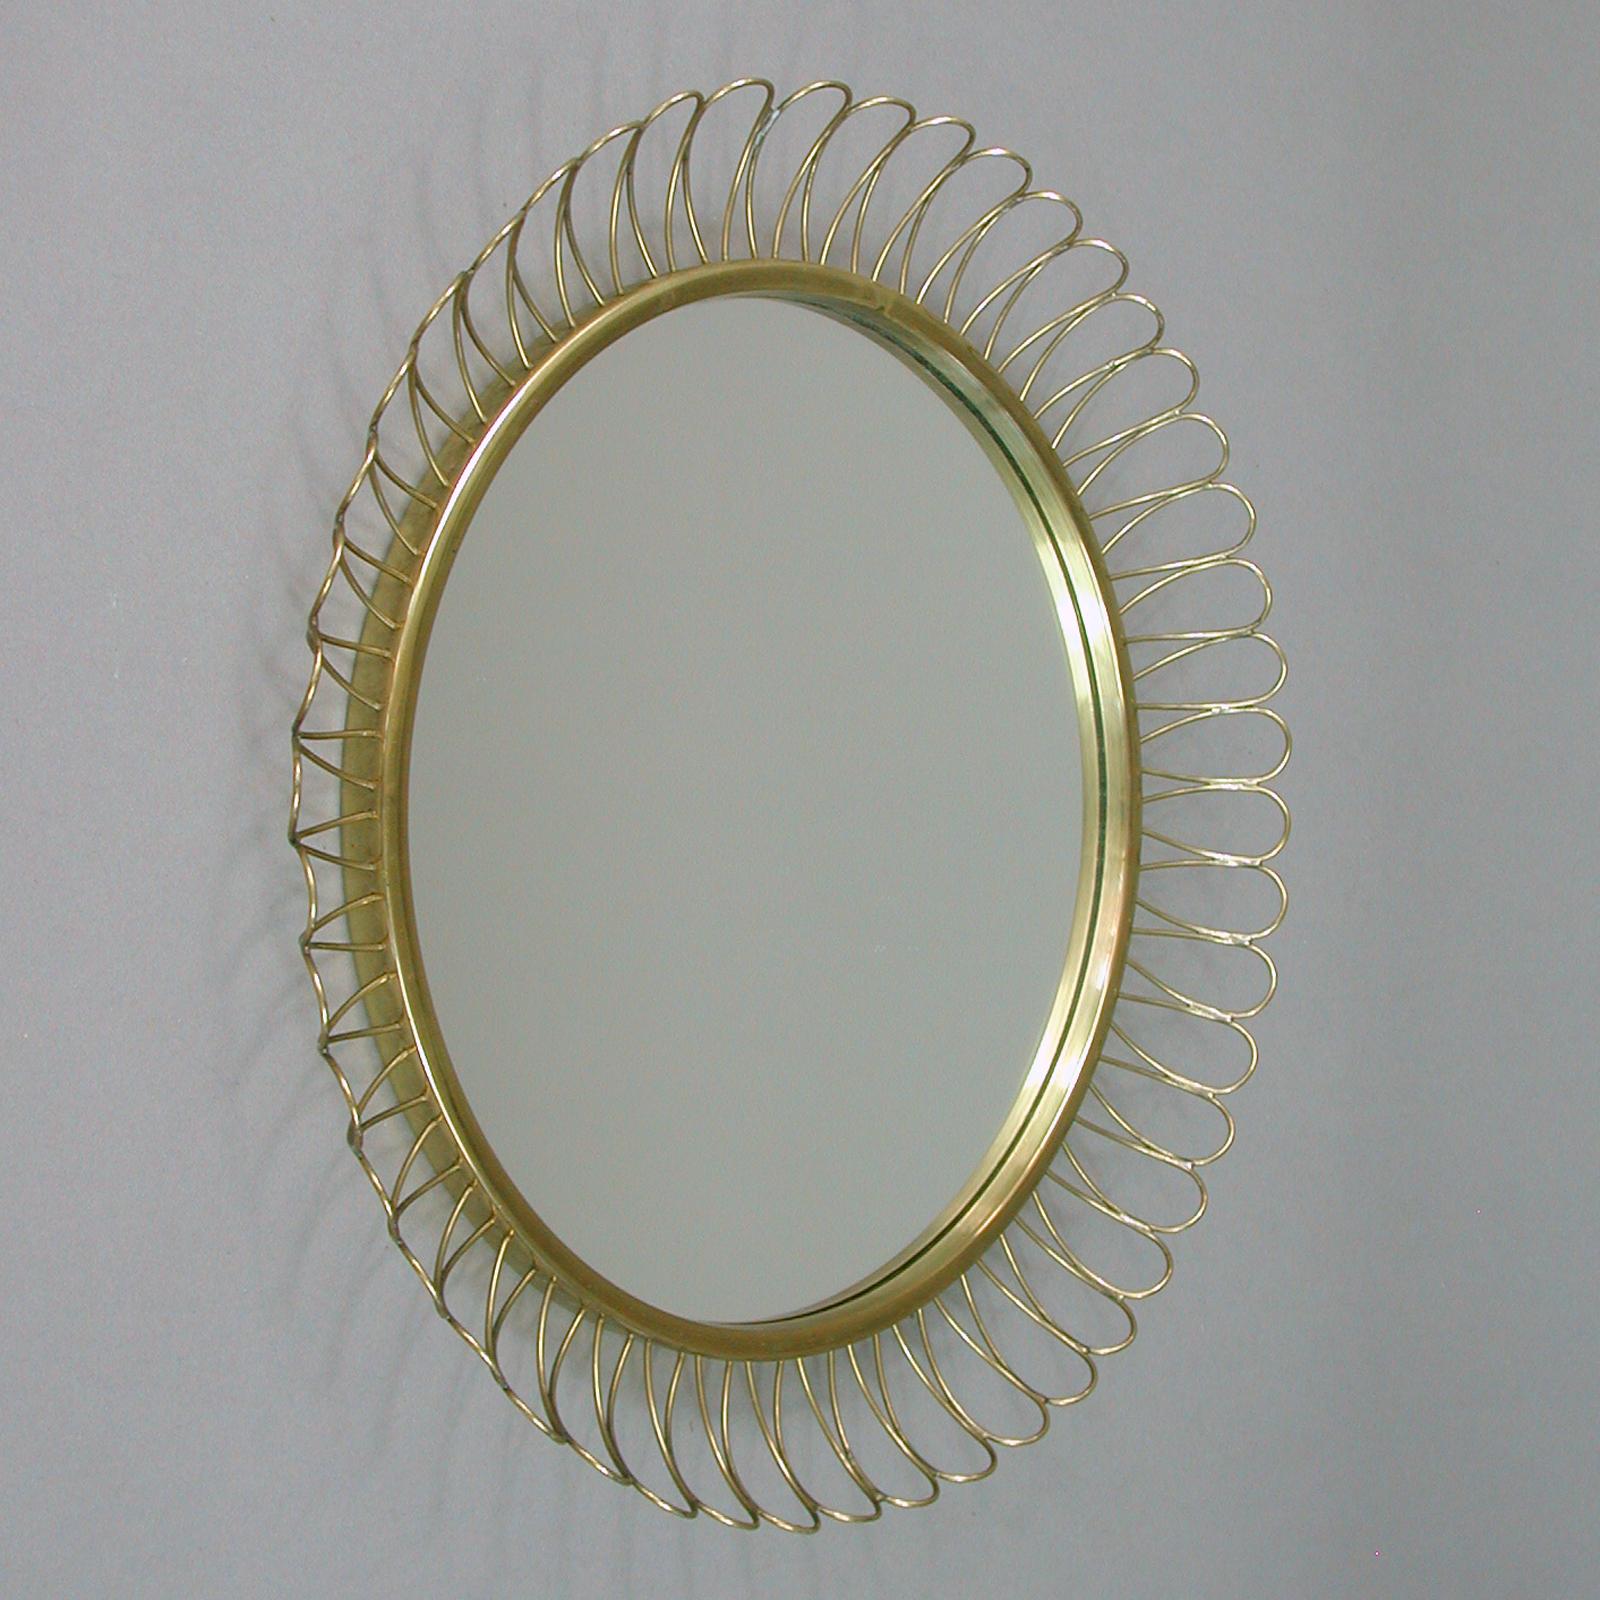 Midcentury Sculptural Round Brass Wall Mirror, Sweden, 1950s For Sale 1